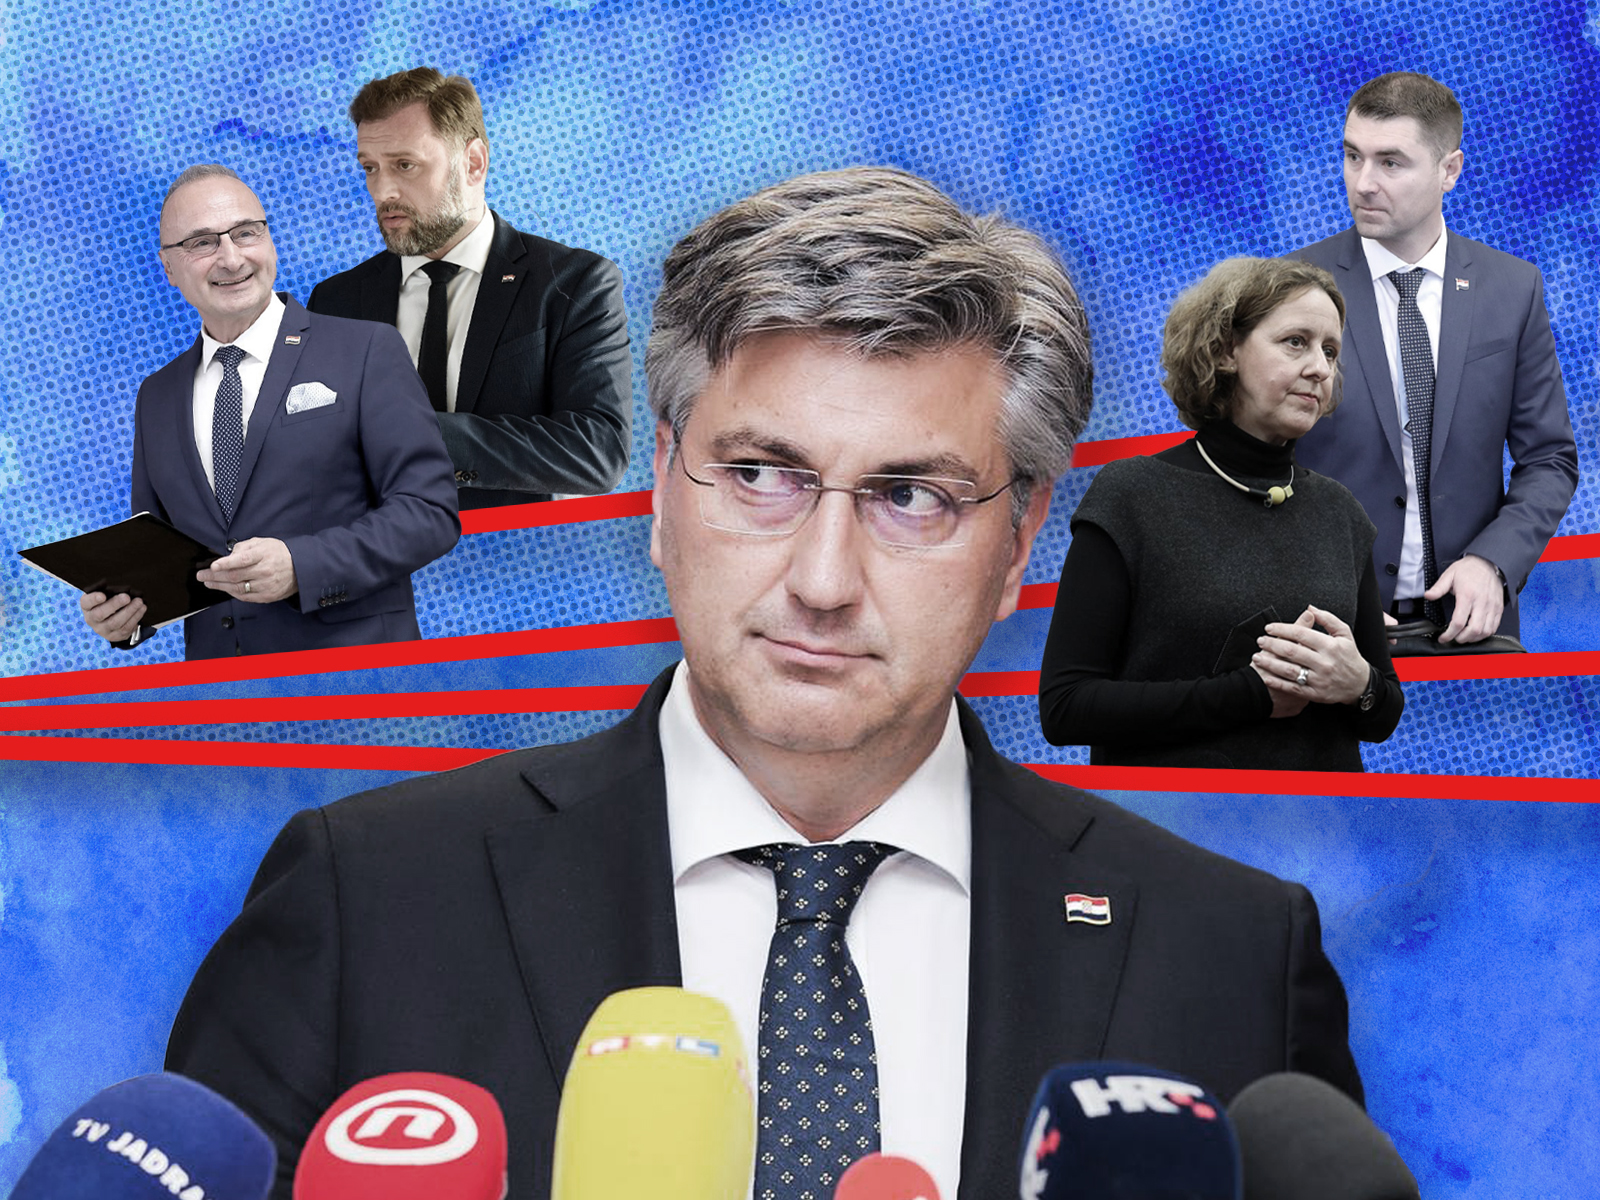 STALJINISTIČKO-FARAONSKI STIL: Plenković je osigurao da na izbornom saboru HDZ-a njegovi kandidati nemaju protukandidata – NACIONAL.HR